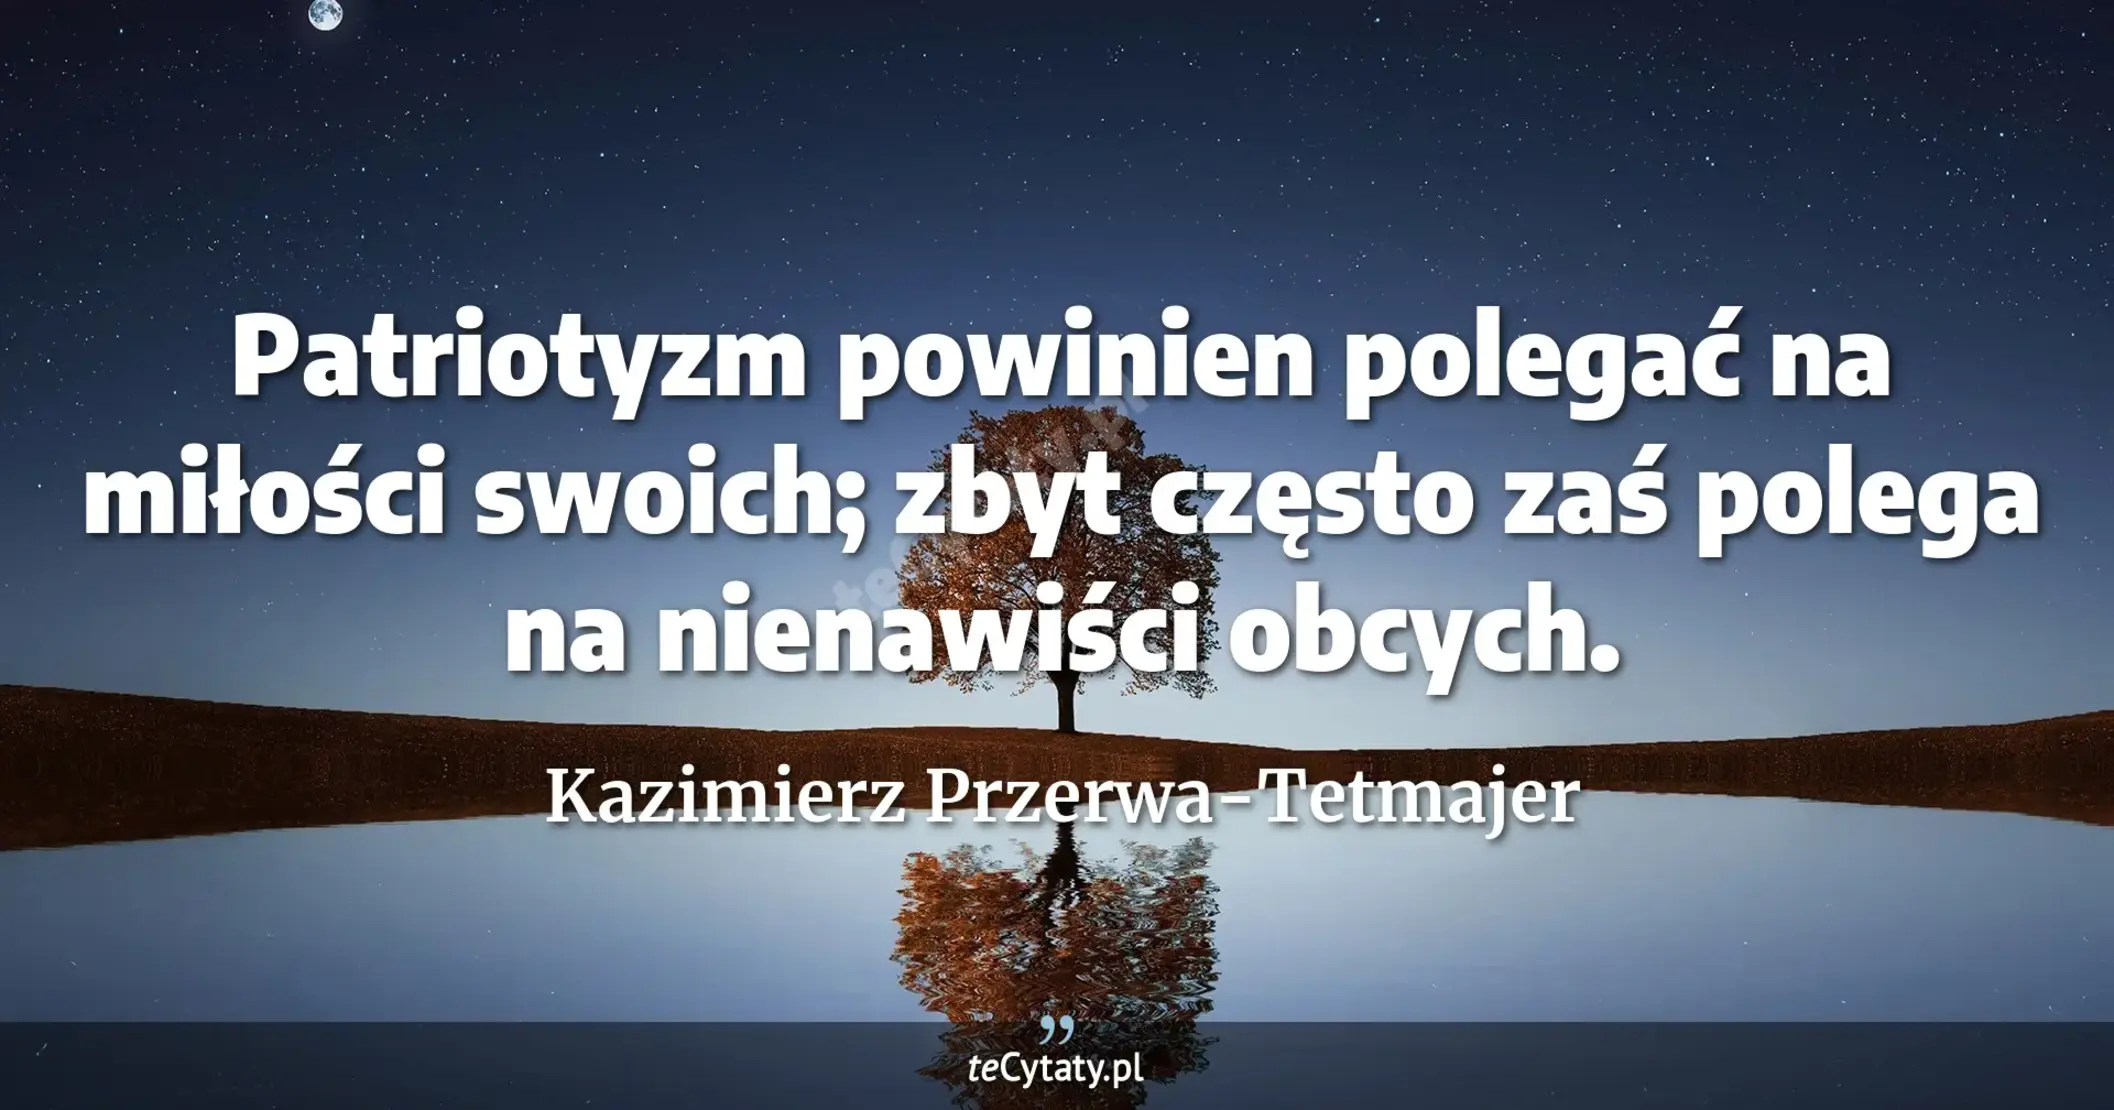 Patriotyzm powinien polegać na miłości swoich; zbyt często zaś polega na nienawiści obcych. - Kazimierz Przerwa-Tetmajer